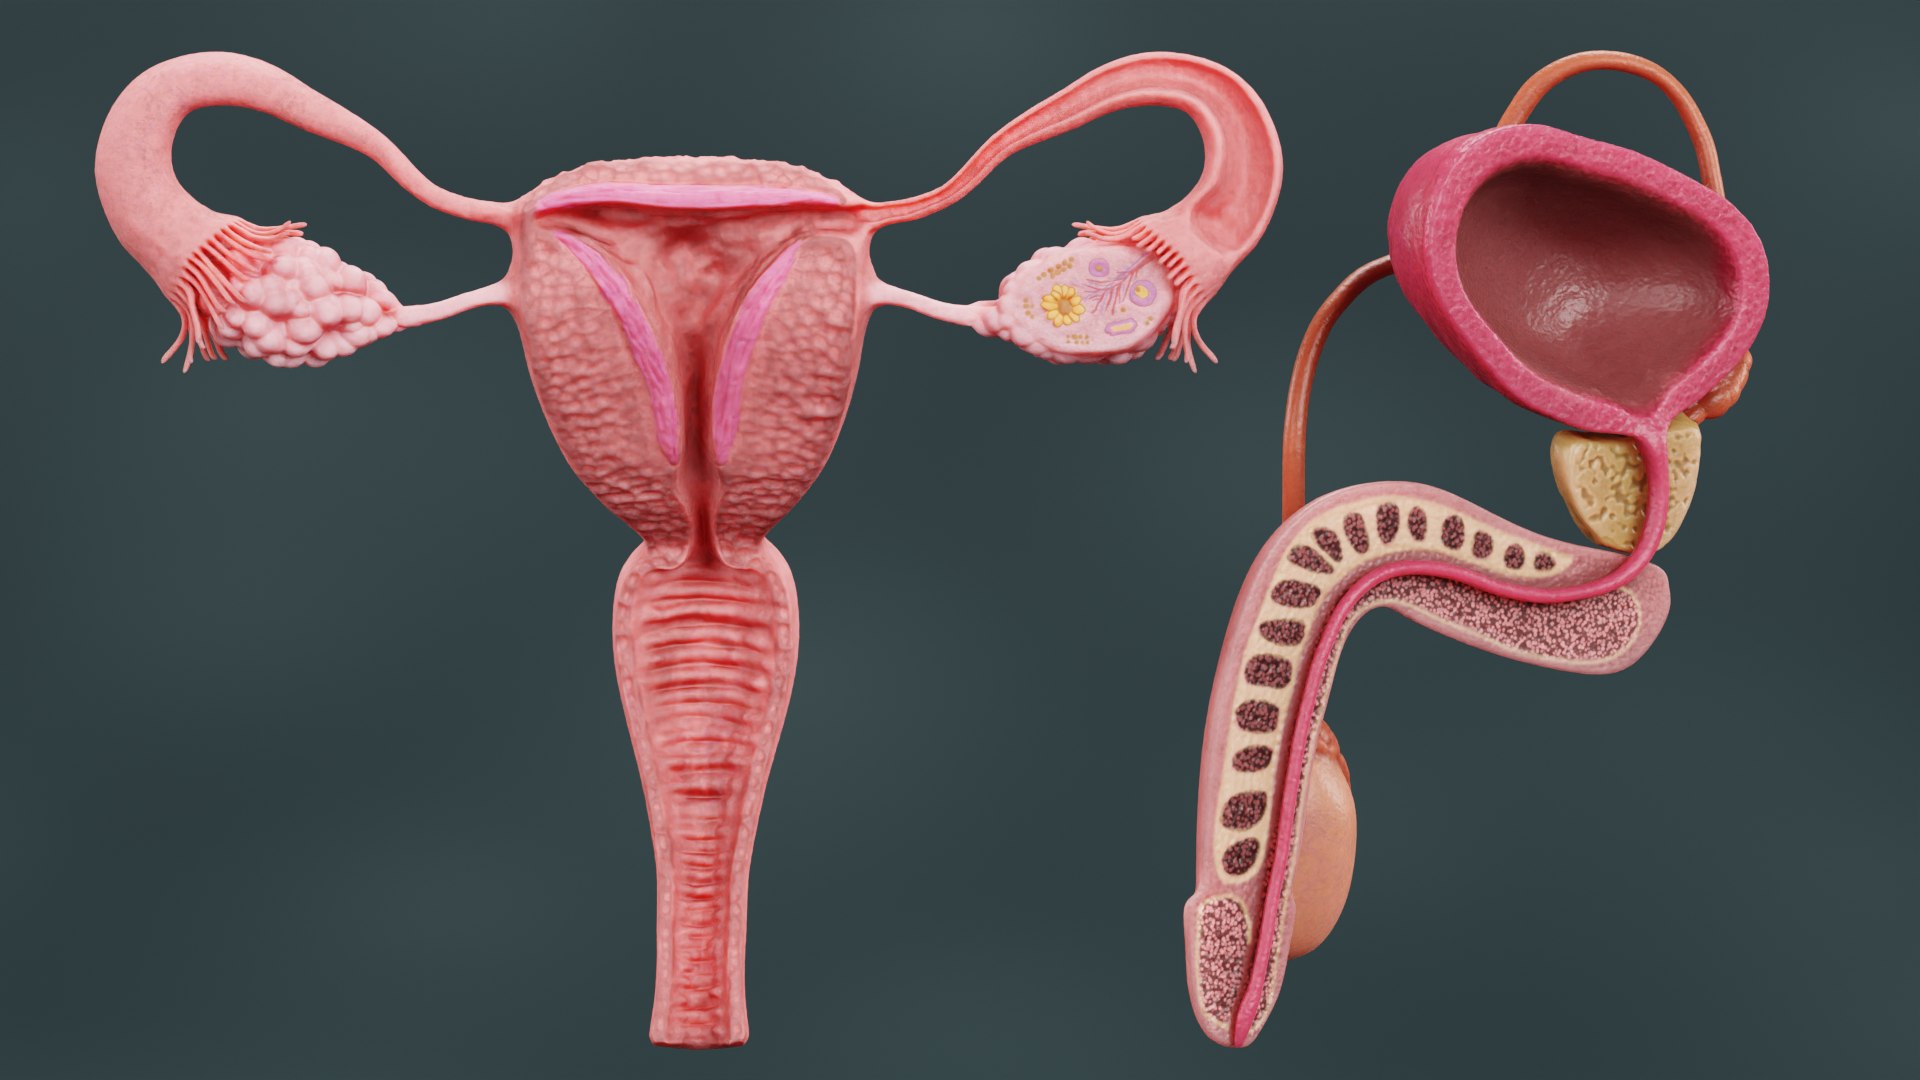 мужская сперма и ее влияние на женский организм фото 97